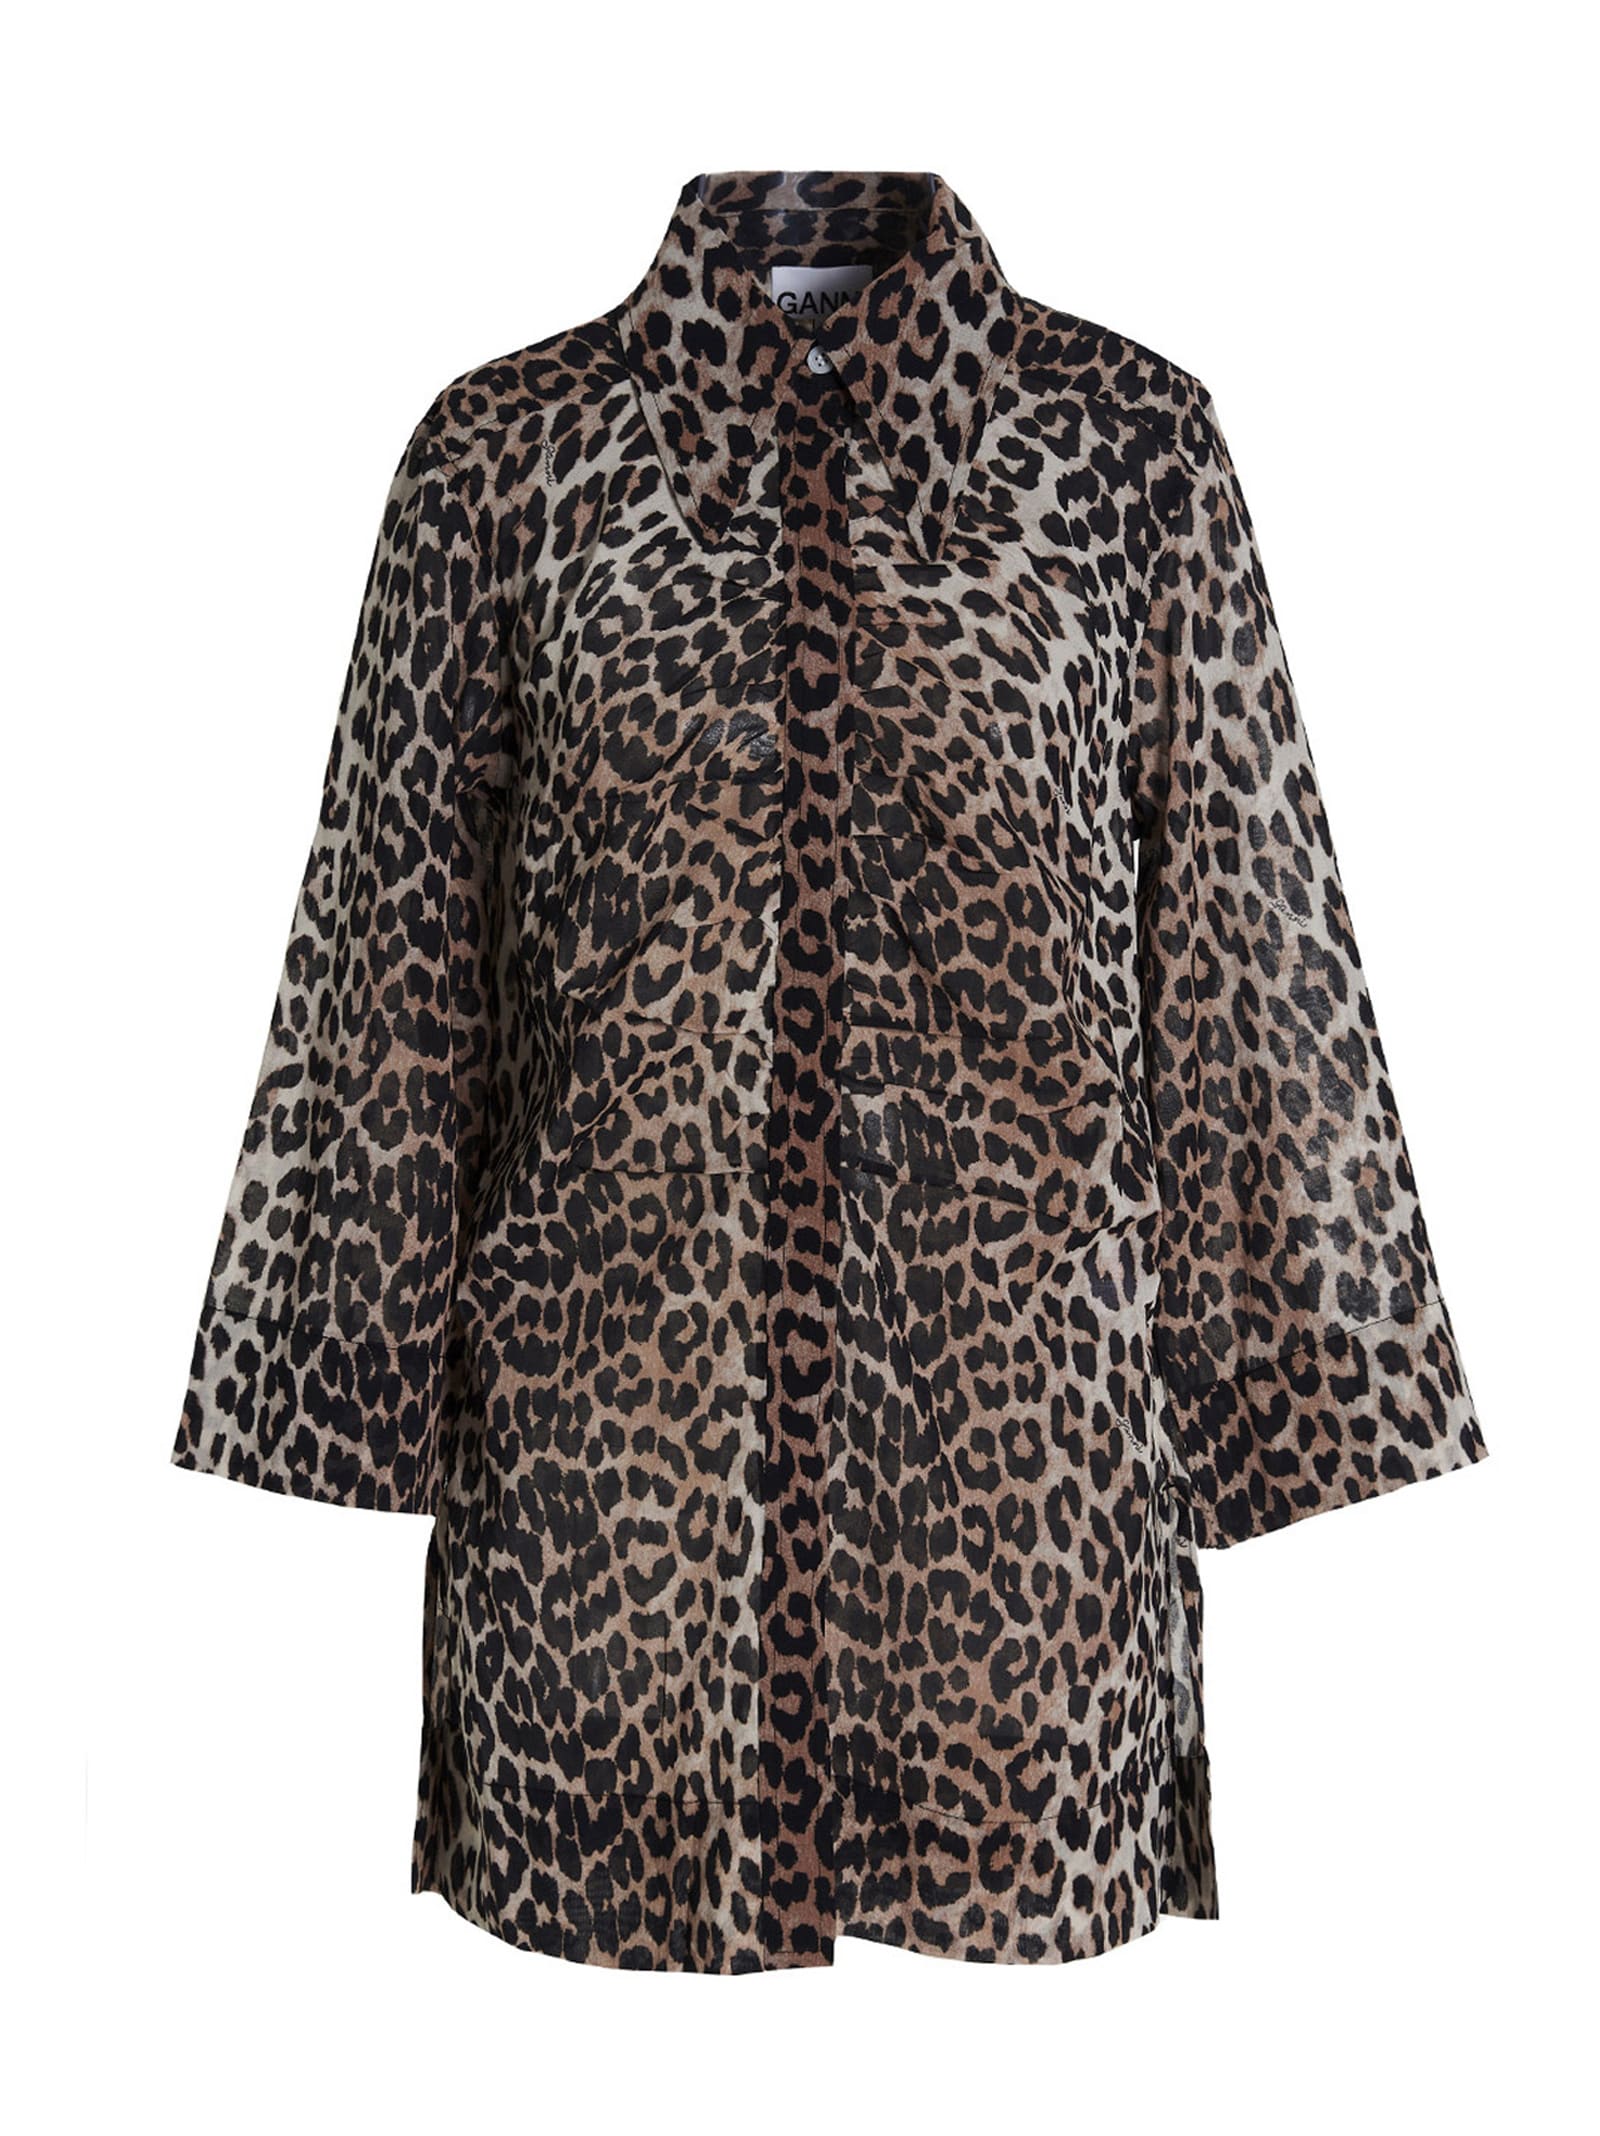 Ganni leopard Dress